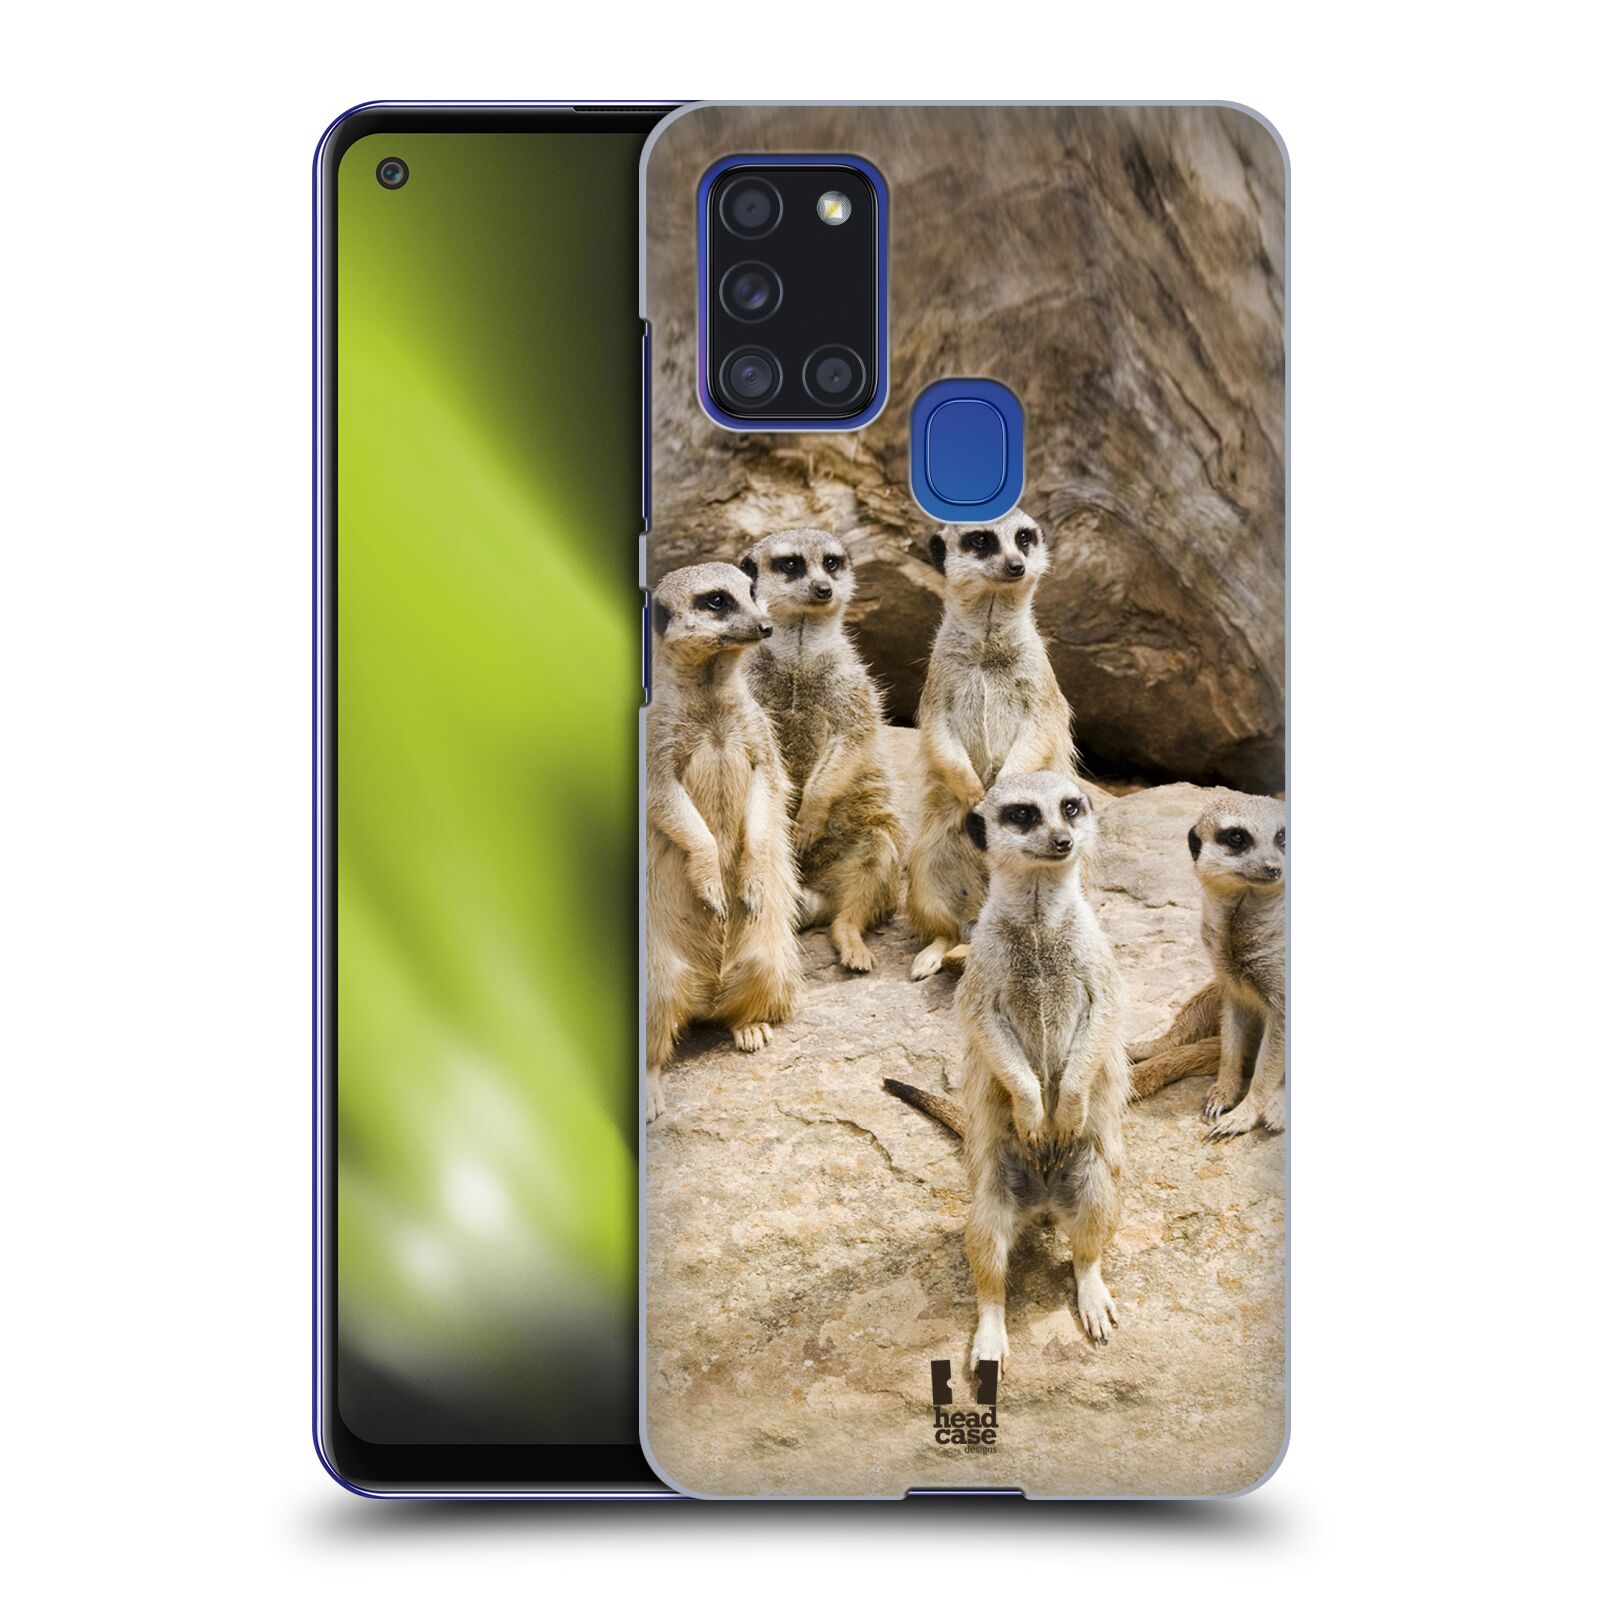 Zadní obal pro mobil Samsung Galaxy A21s - HEAD CASE - Svět zvířat roztomilé surikaty